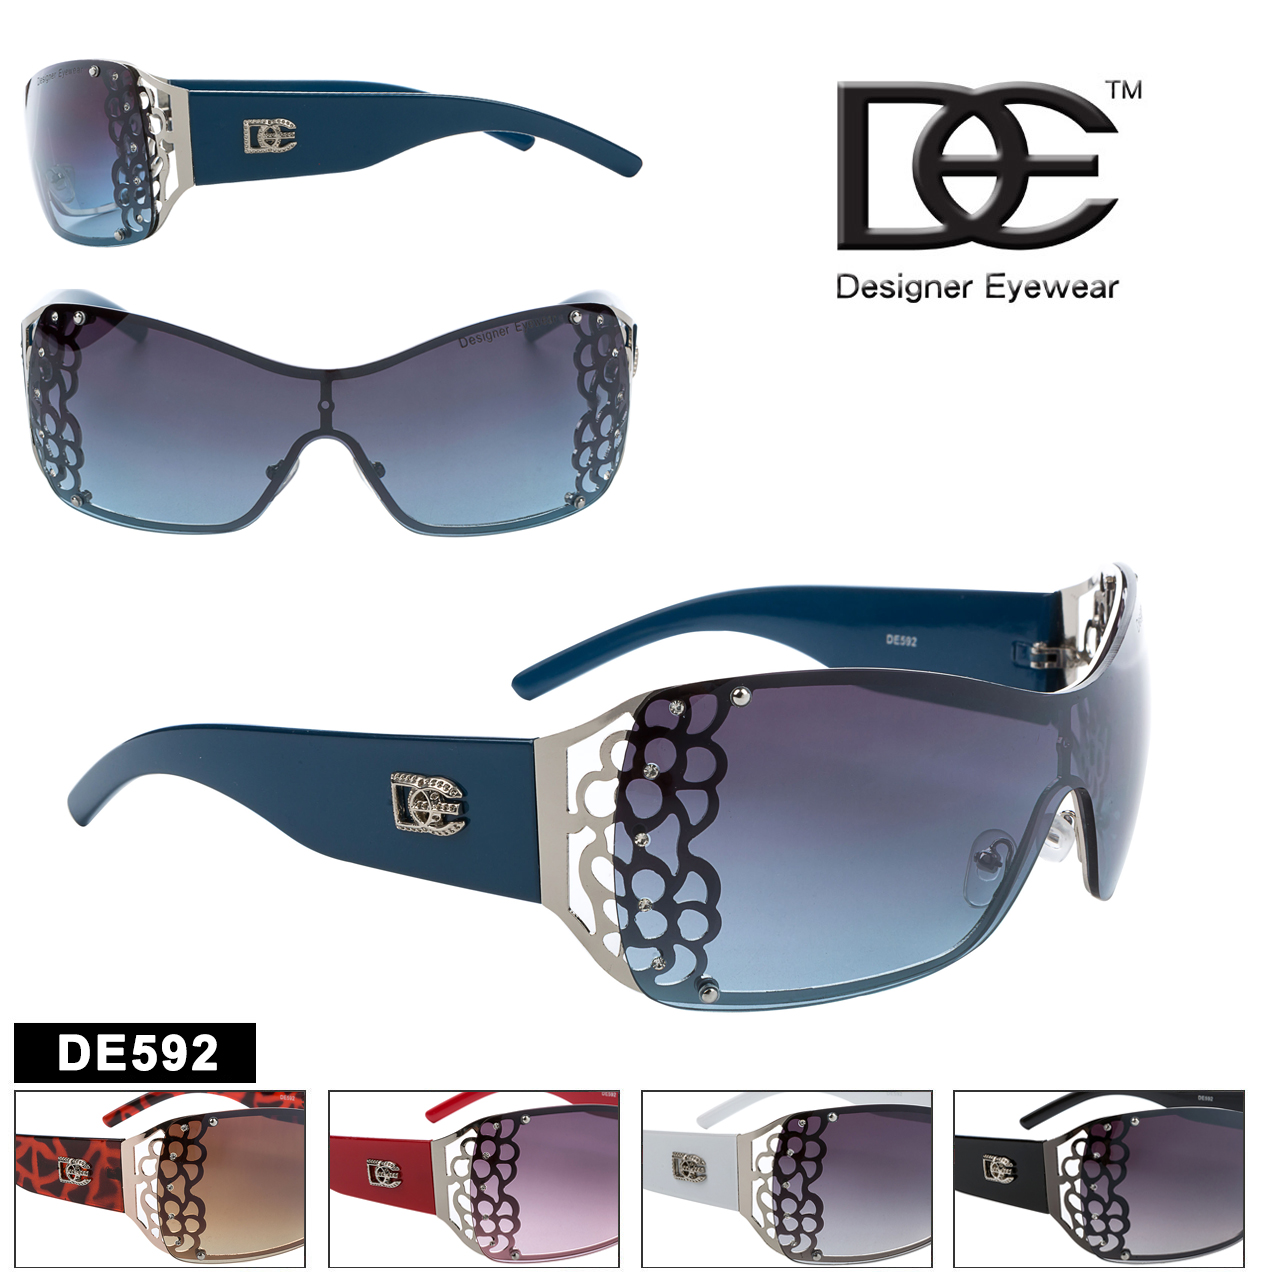 DE™ Women's Fashion Sunglasses - Style # DE592 (Assorted Colors) (12 pcs.)